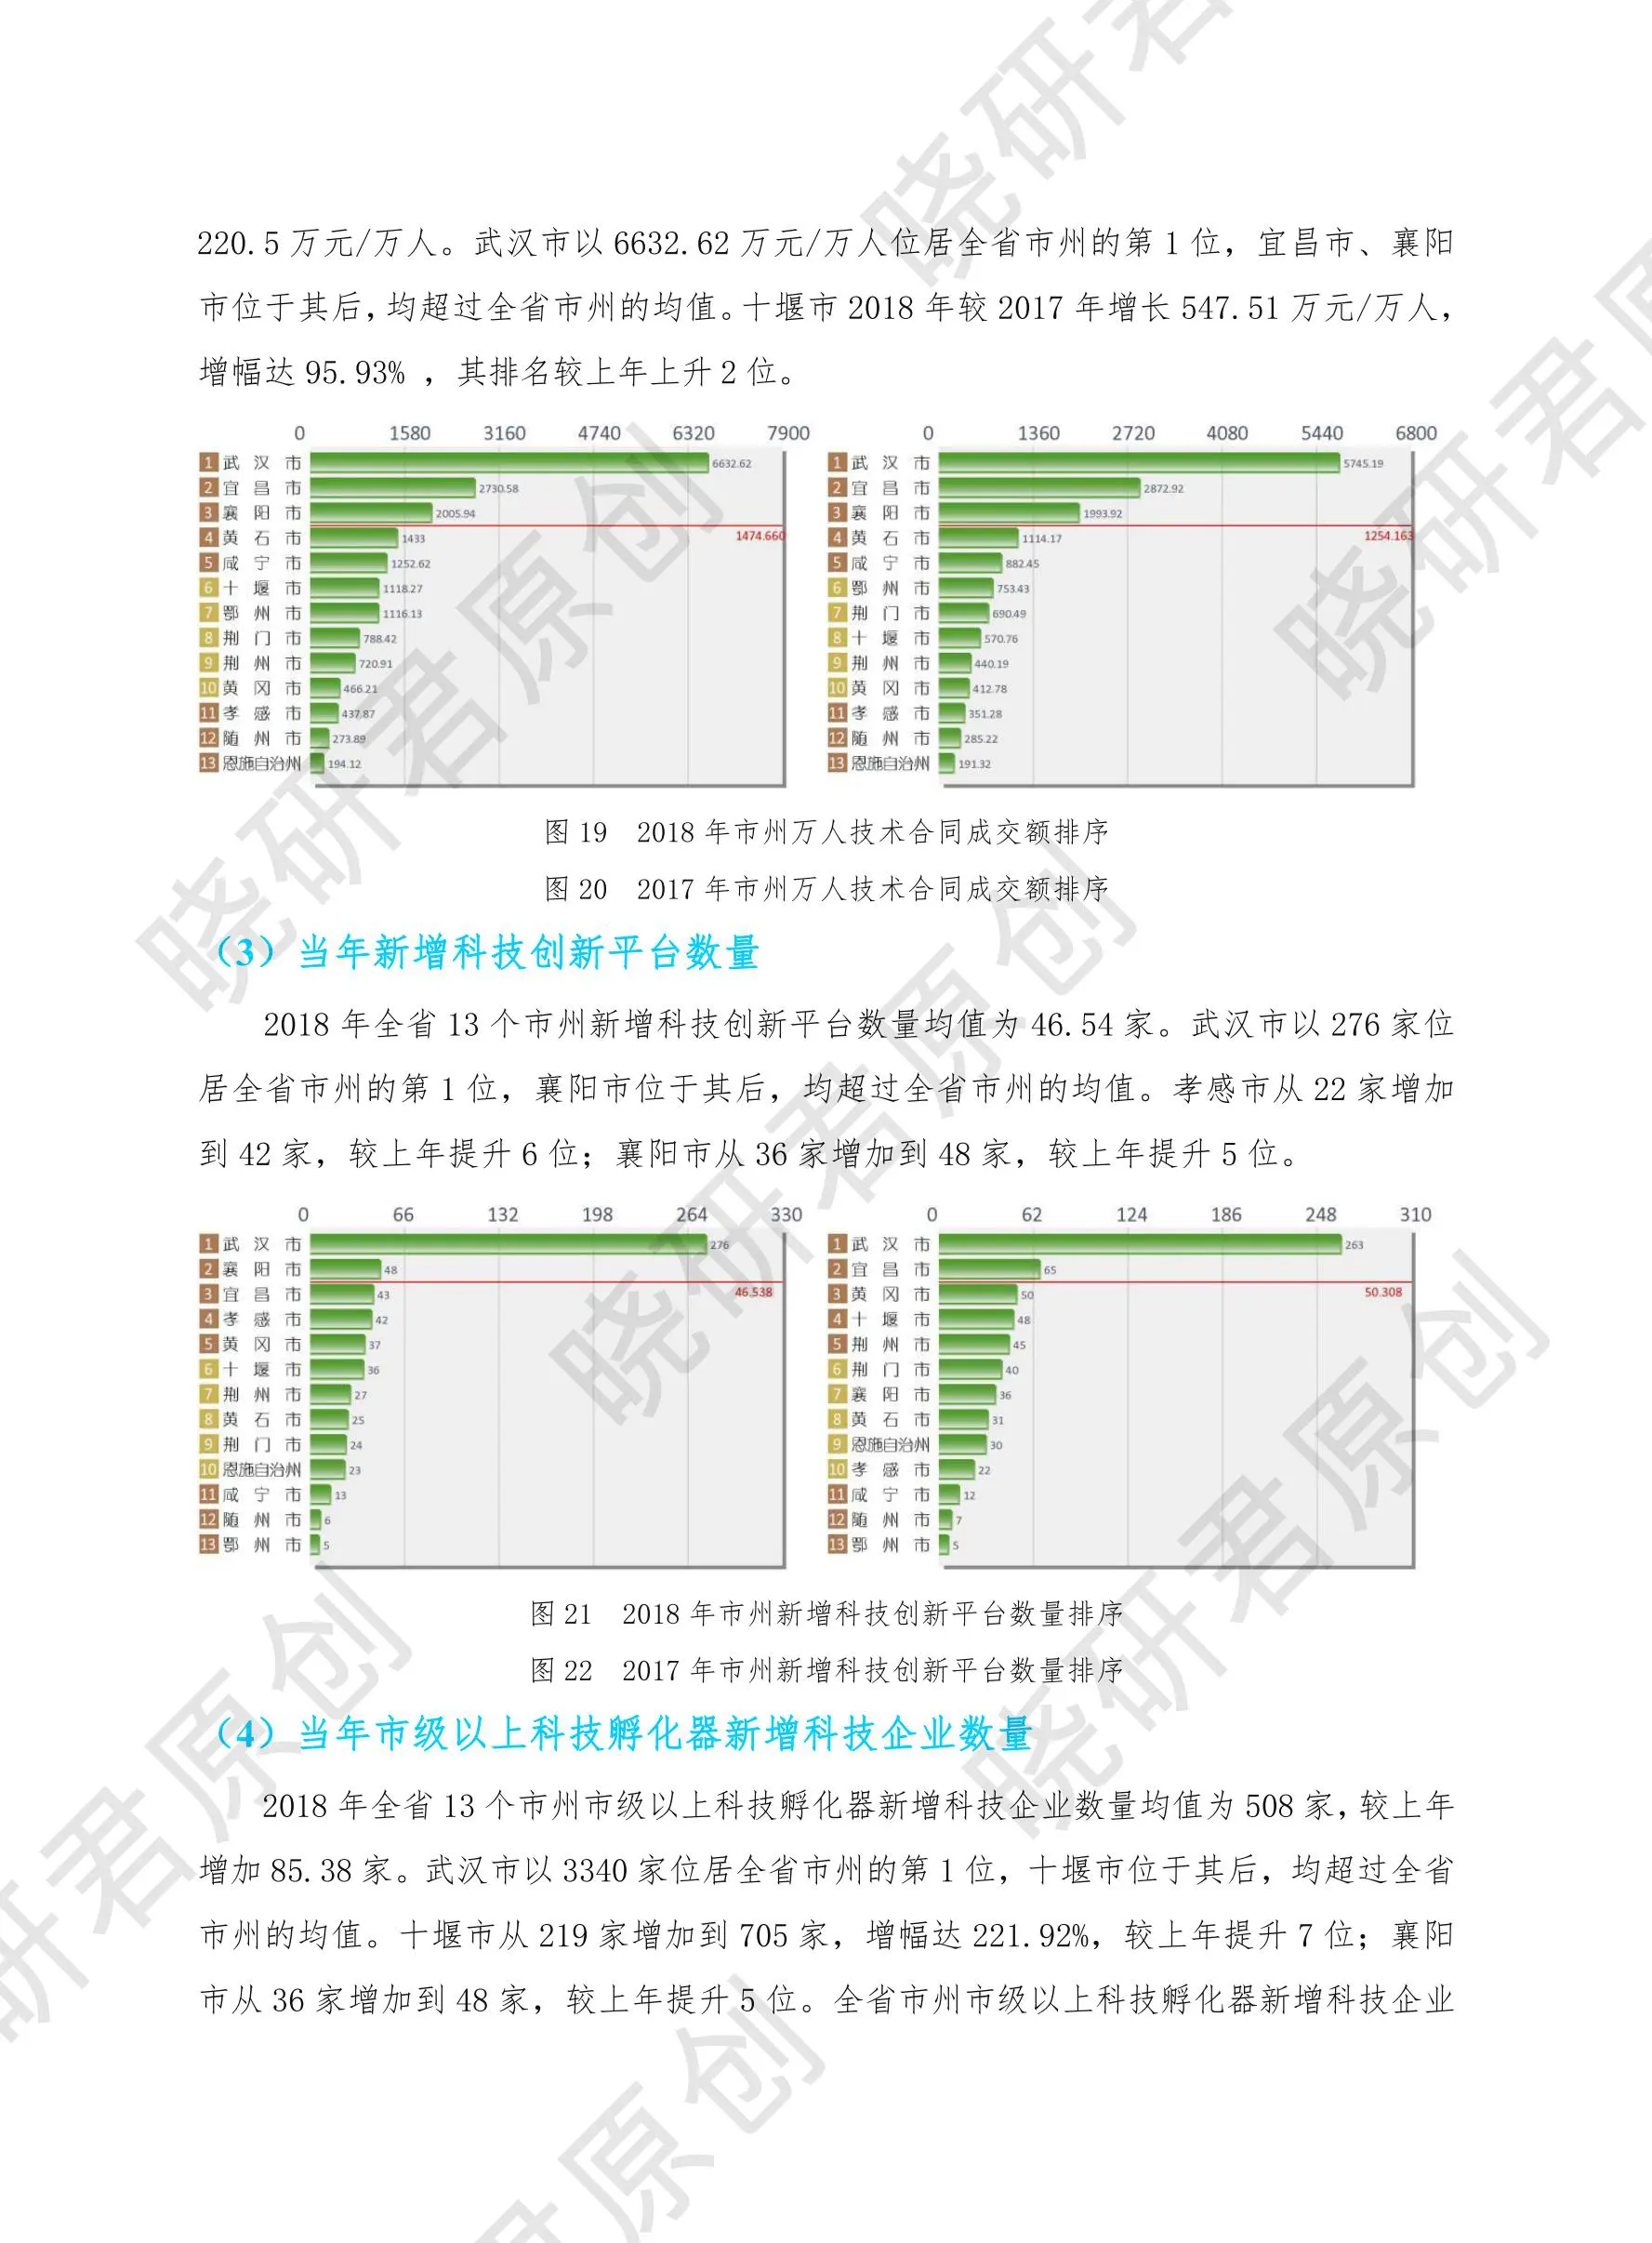 湖北省市县科技创新发展报告-晓研君原创插图10